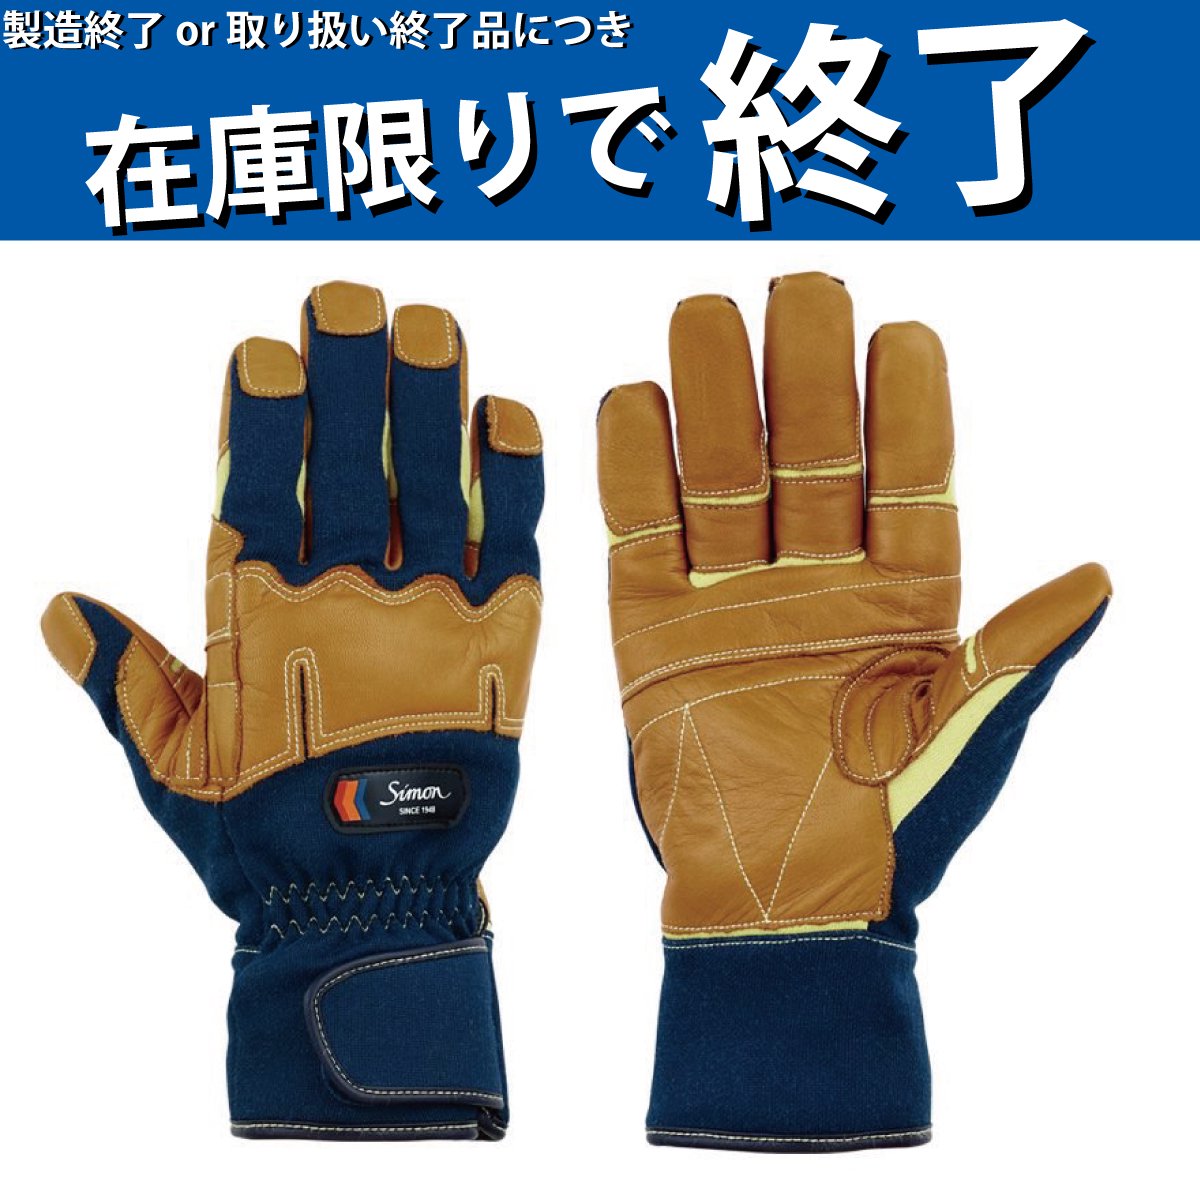 シモン 災害活動用保護手袋(アラミド繊維手袋) KG-180 3L KG-180-3L - 1